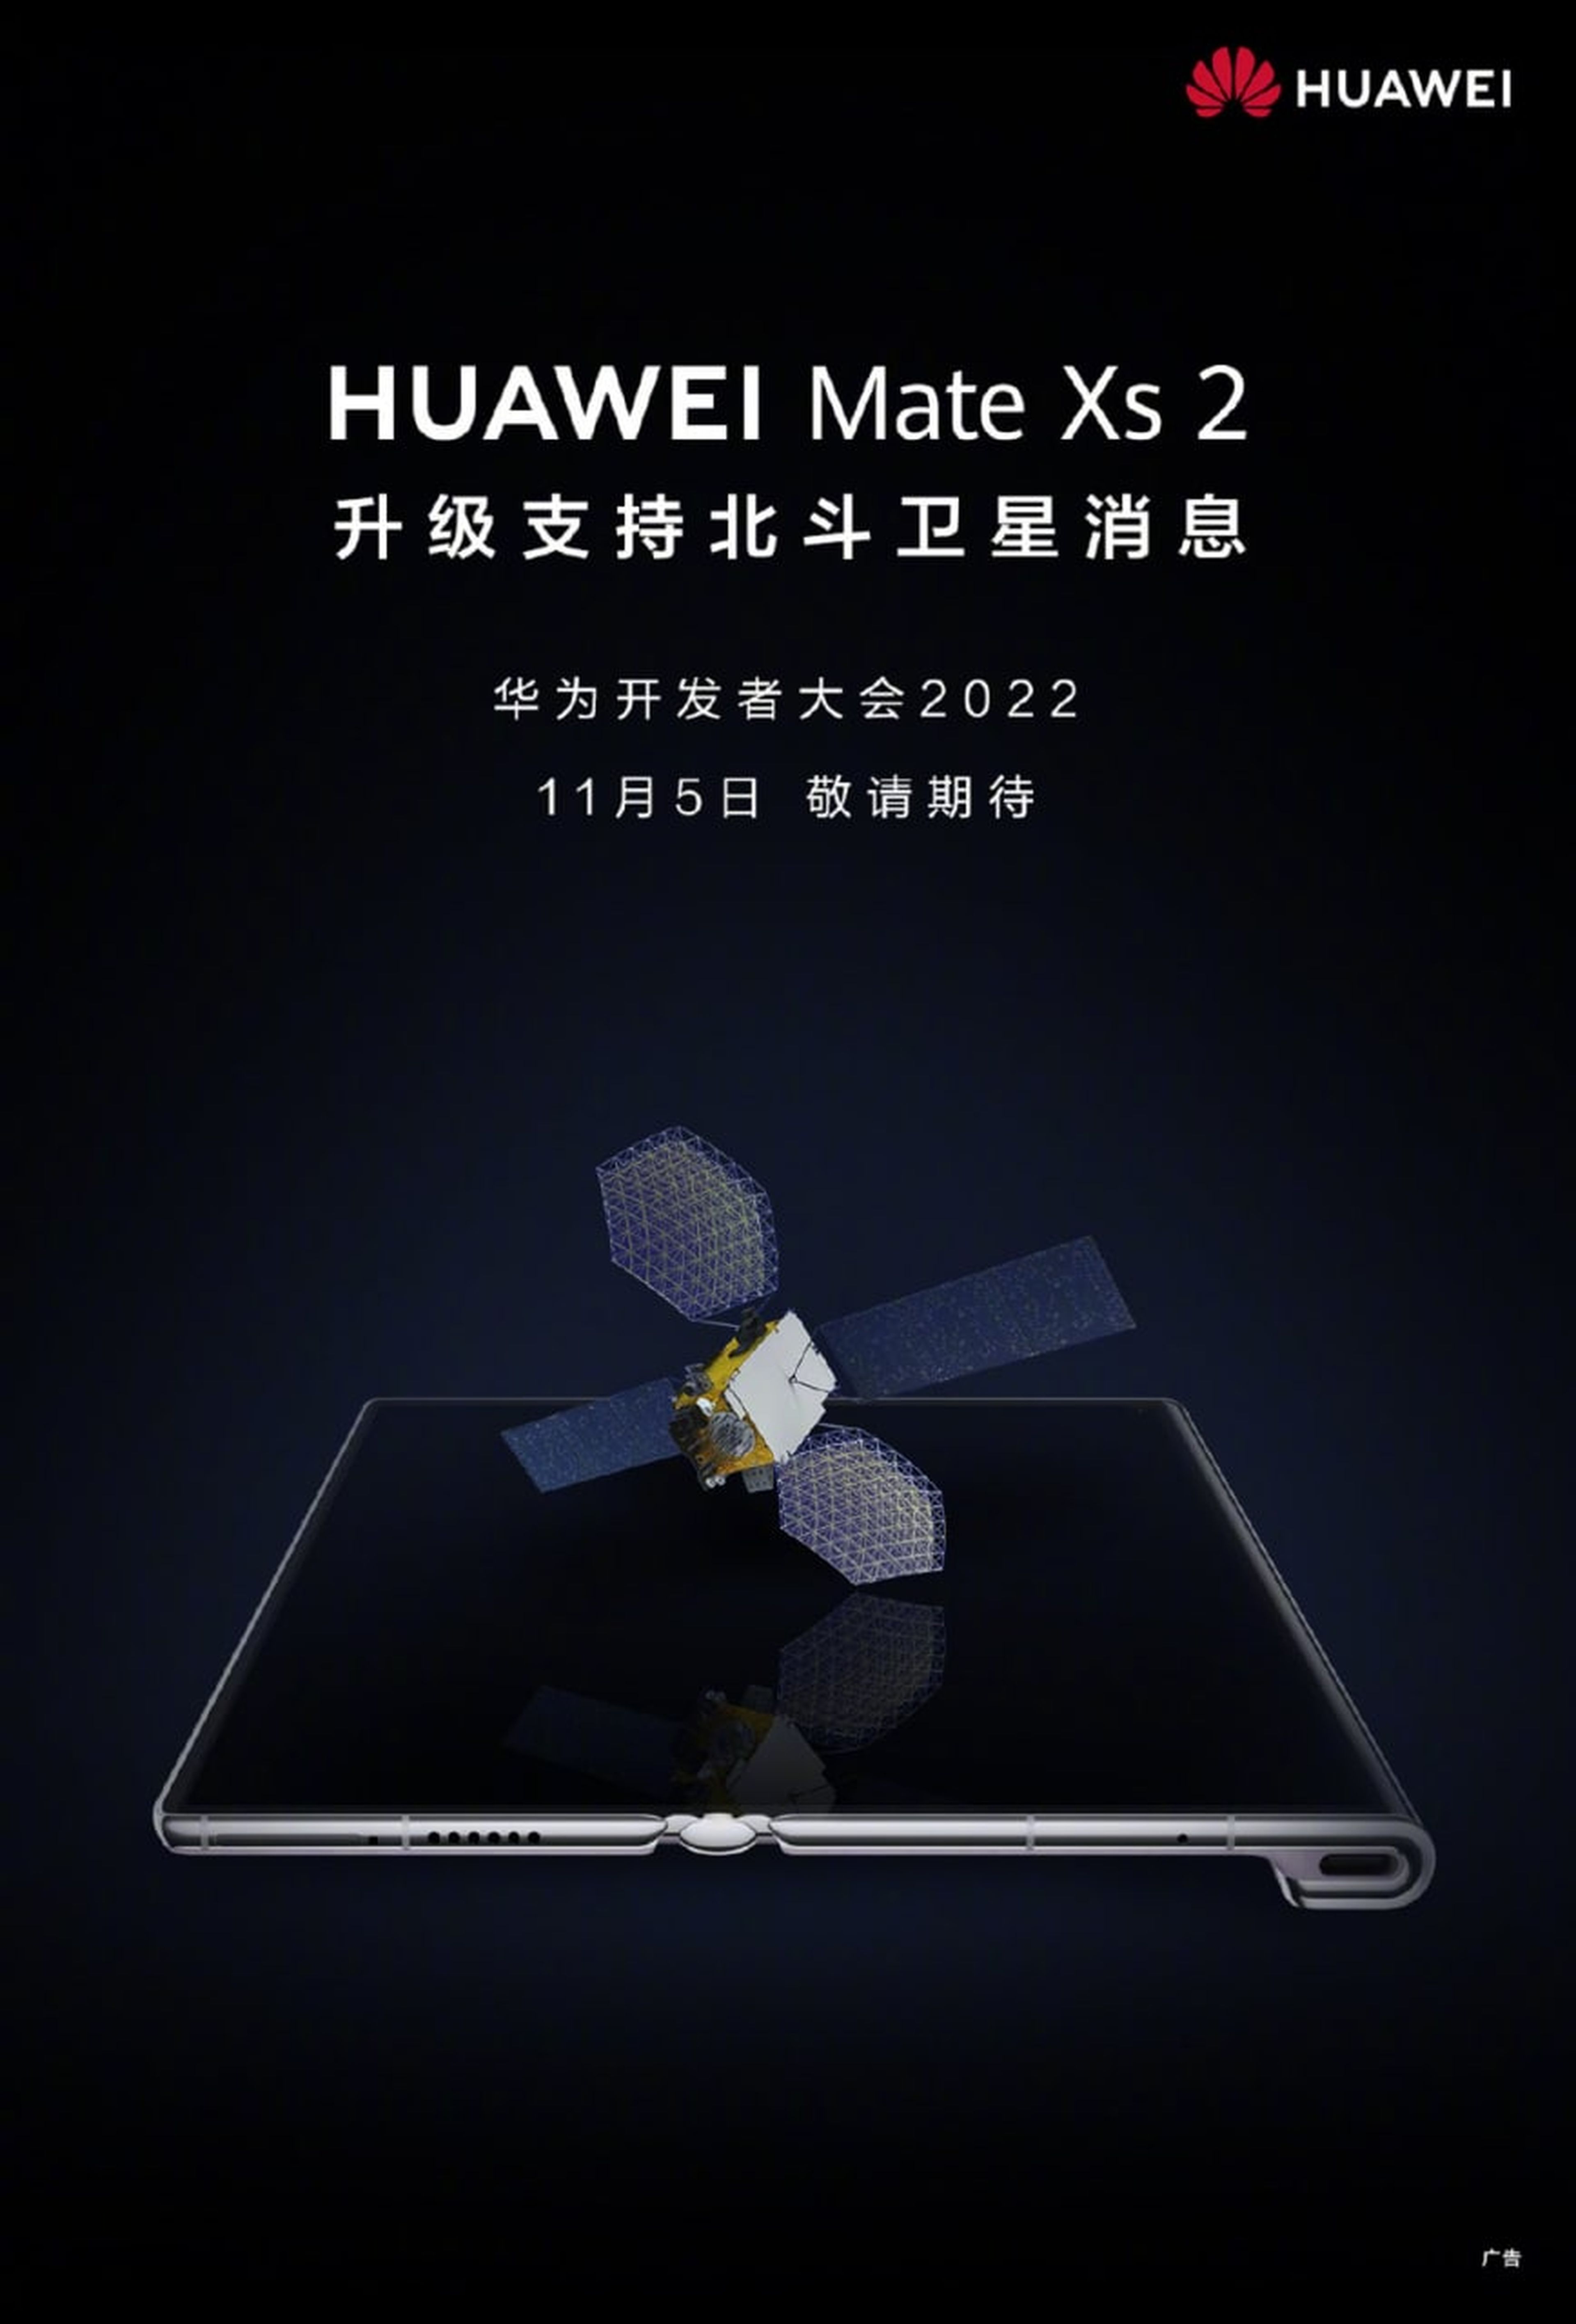 Huawei añadirá a su Mate Xs 2 la comunicación por satélite: el primer plegable en conseguirlo